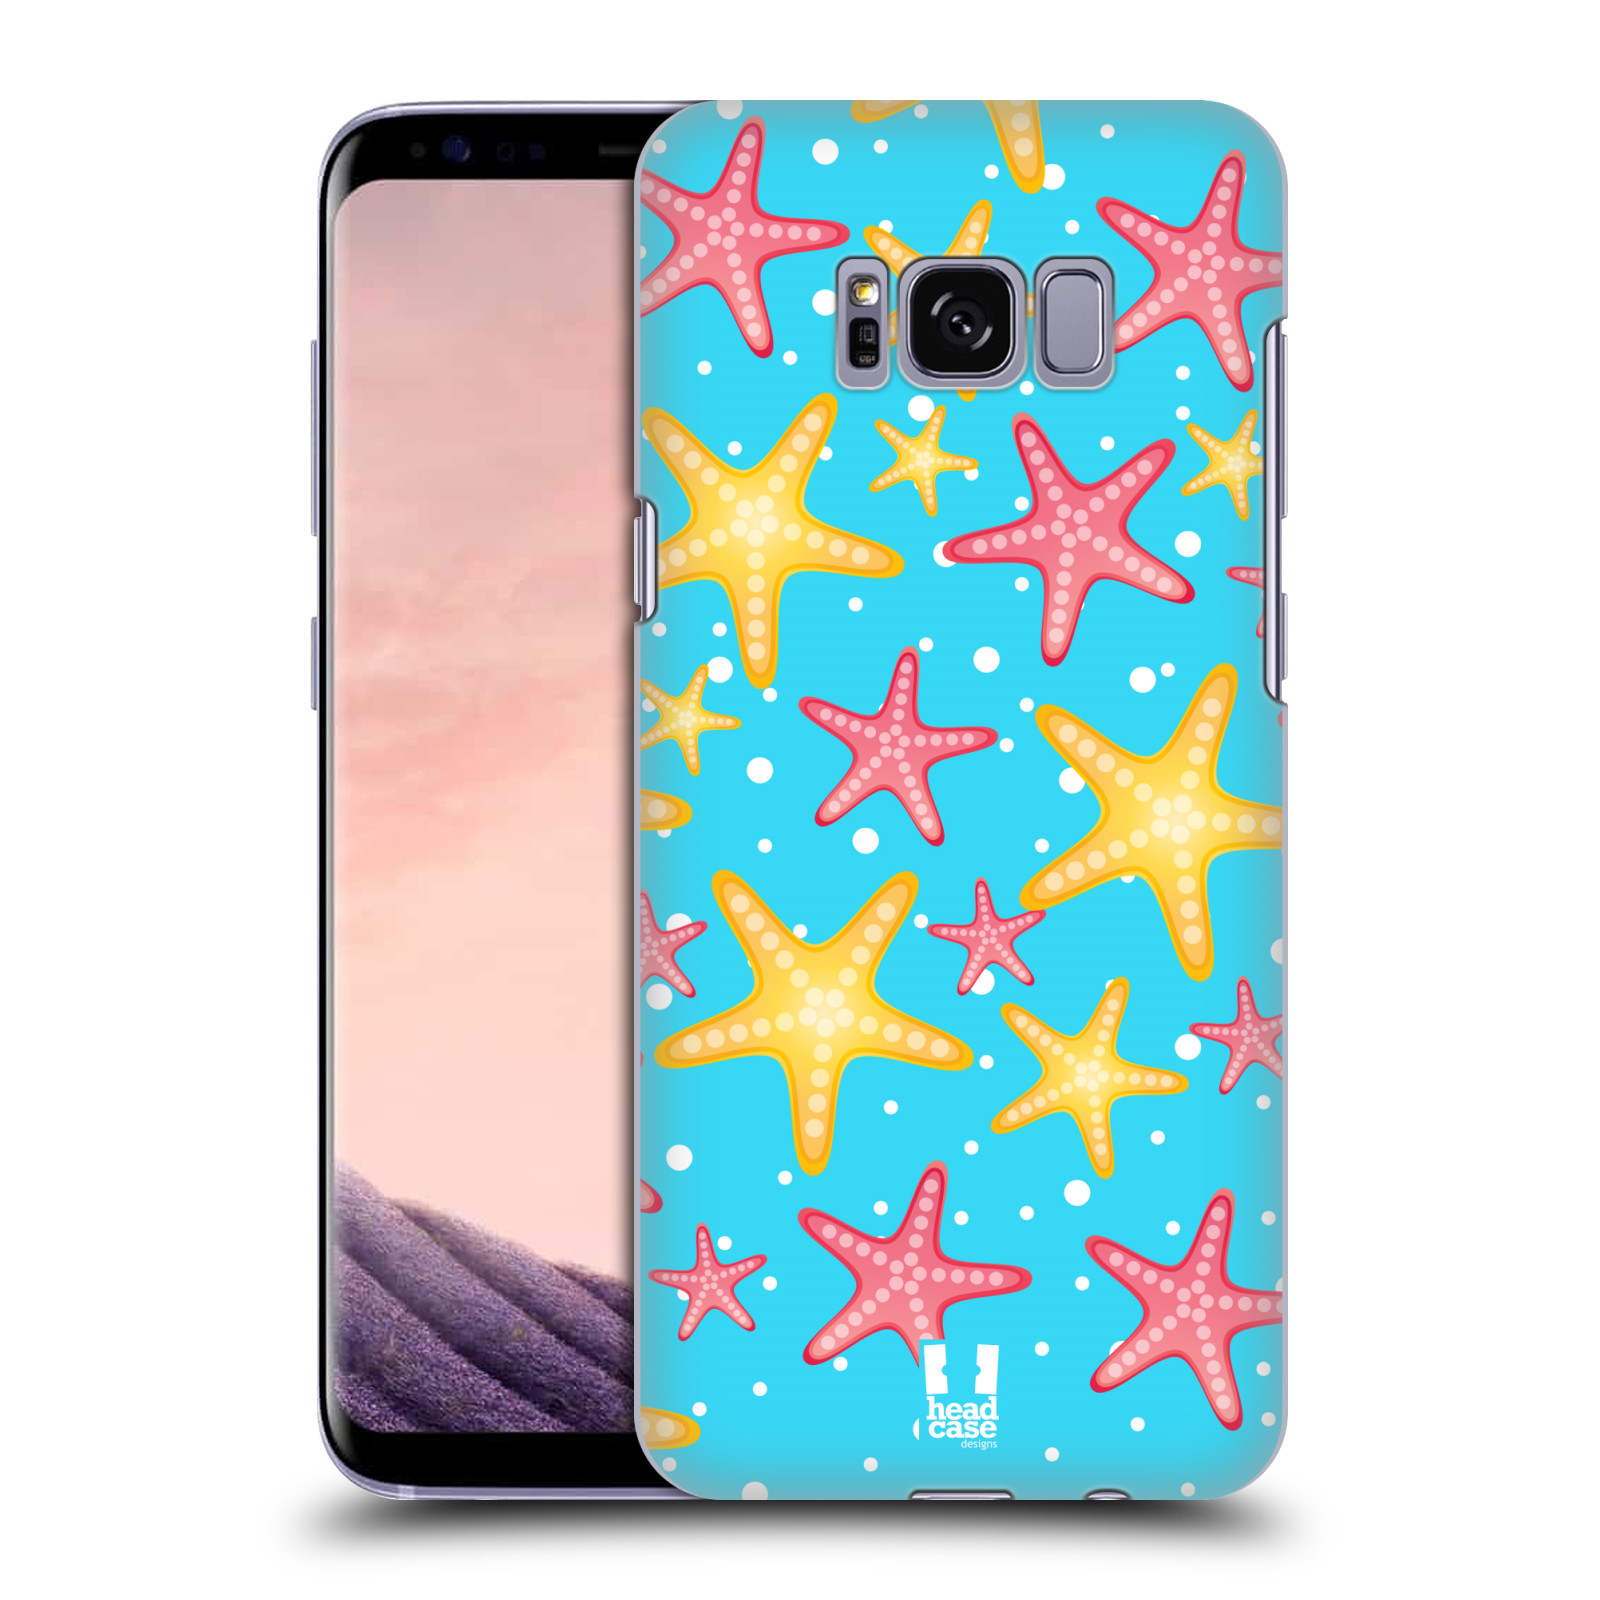 Zadní obal pro mobil Samsung Galaxy S8 - HEAD CASE - kreslený mořský vzor hvězda